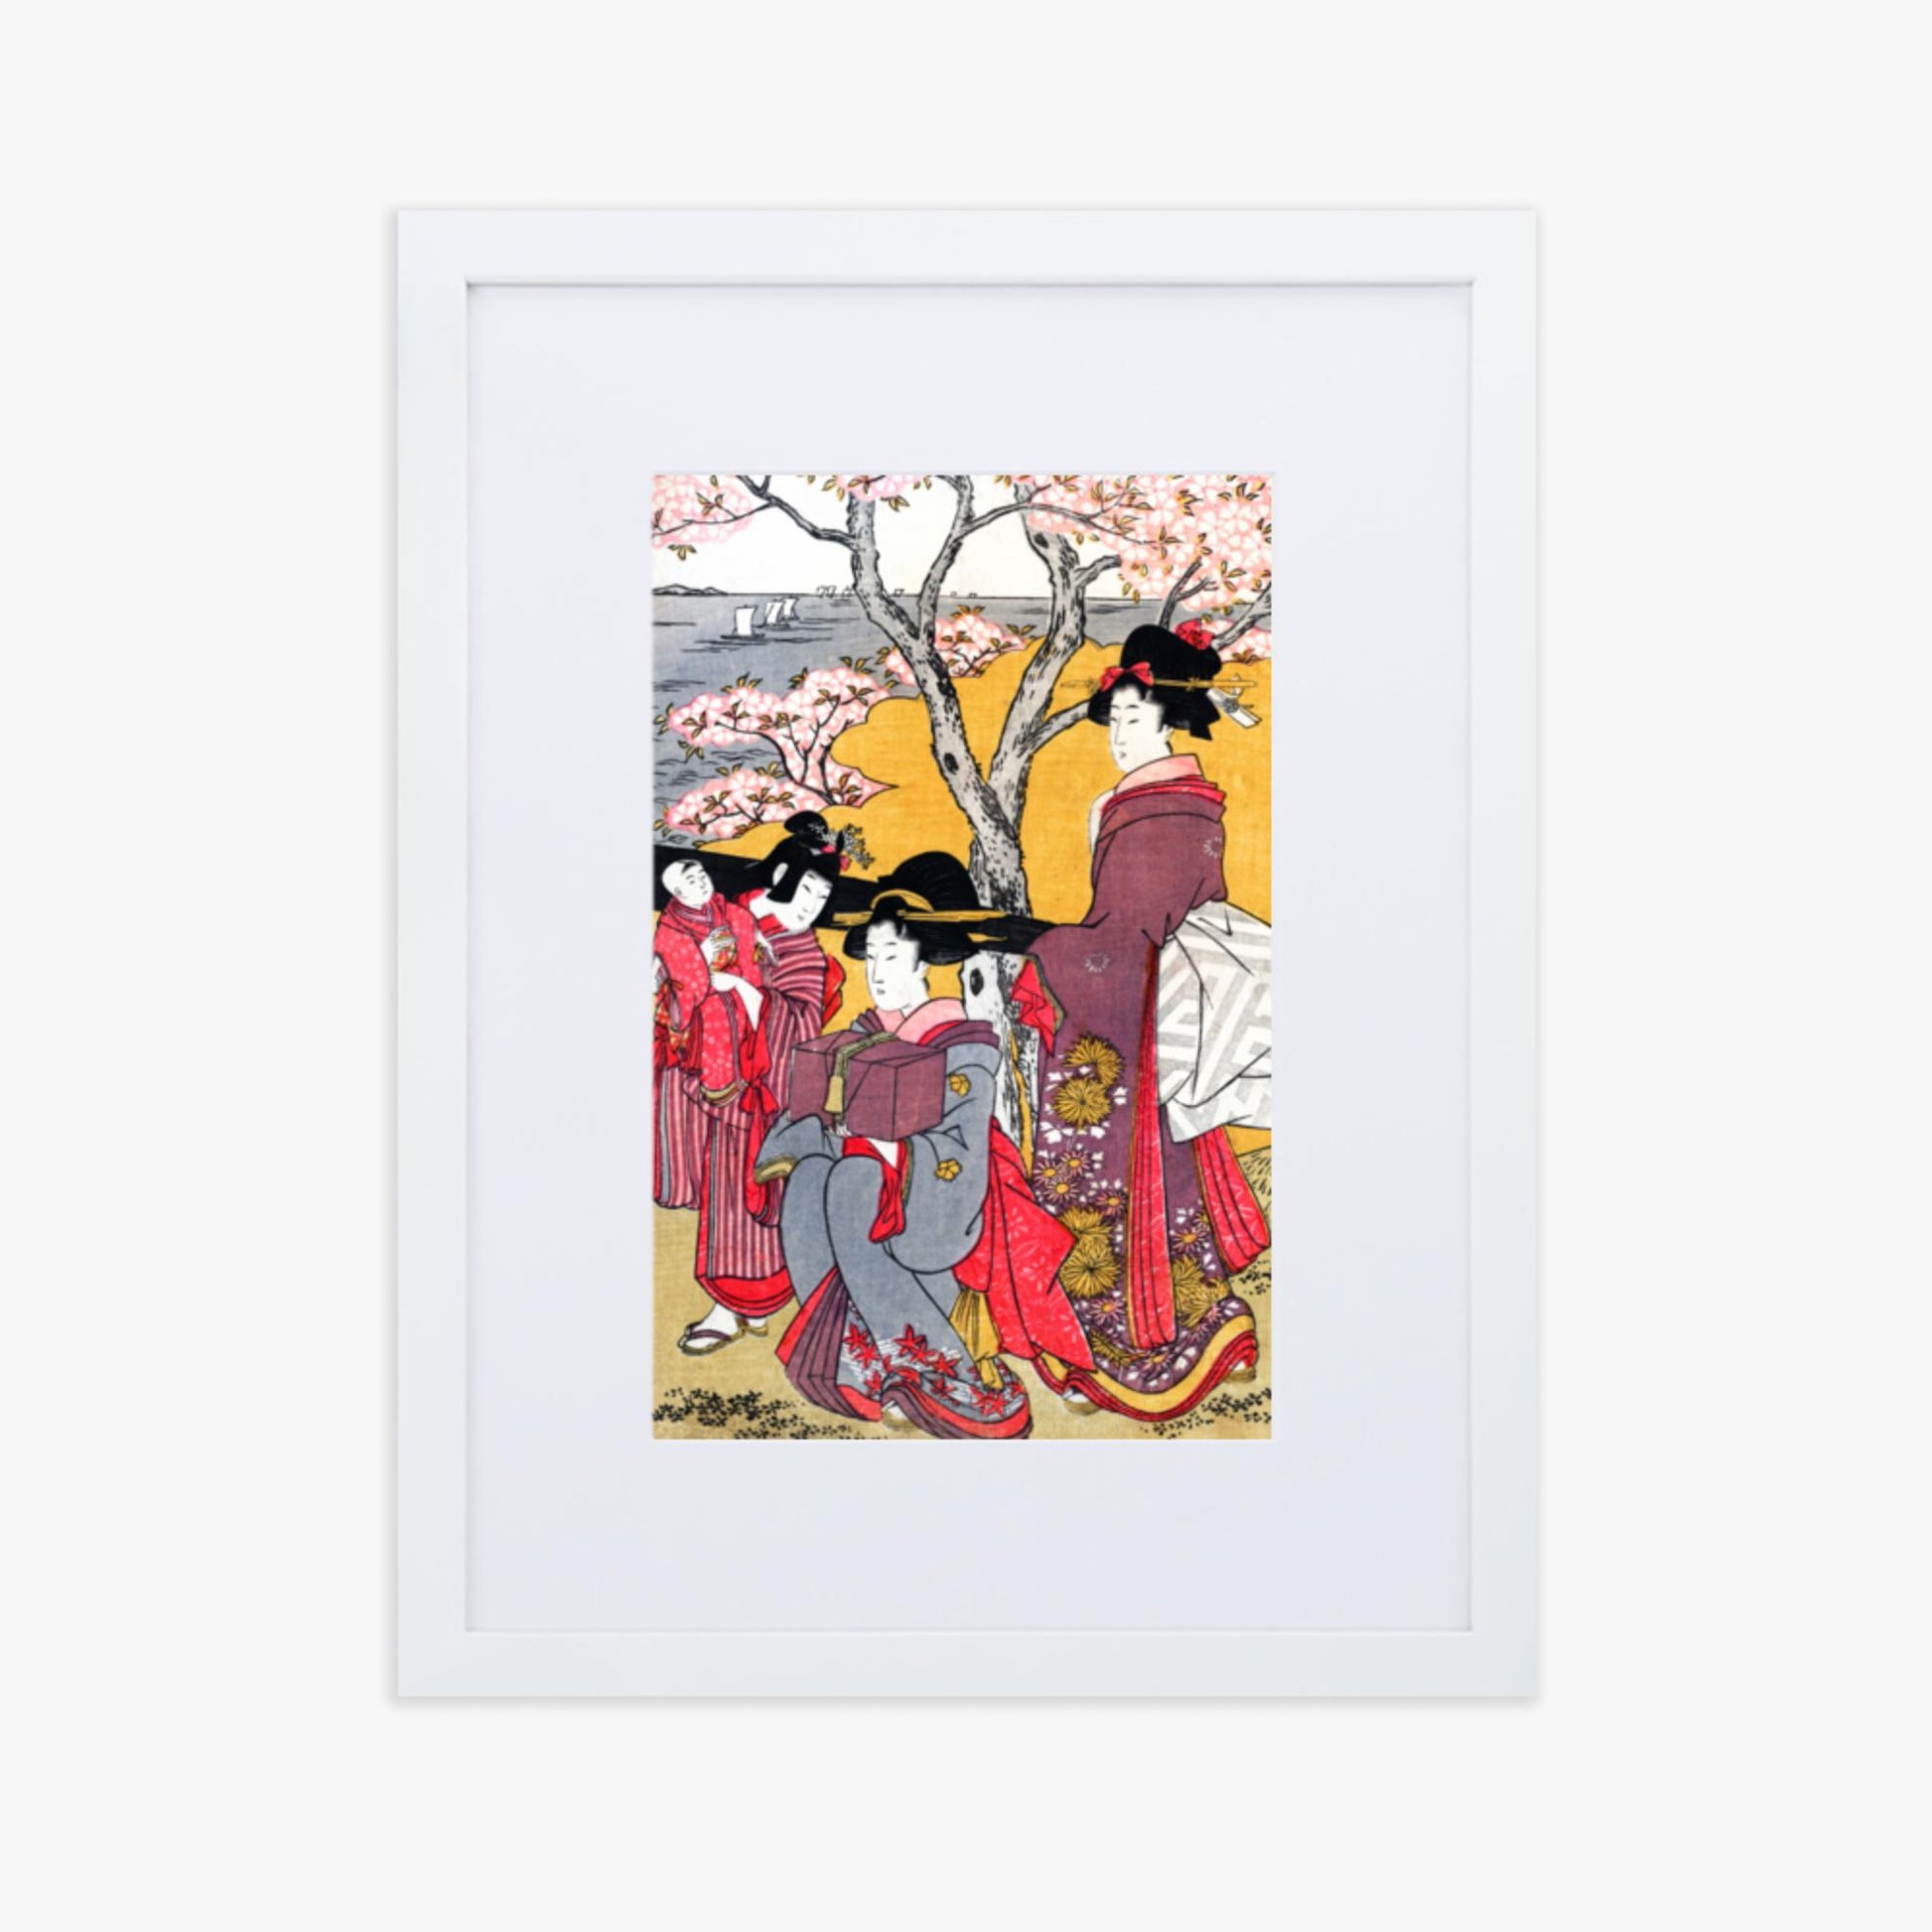 Kitagawa Utamaro - Cherry-viewing at Gotenyama 30x40 cm Poster With White Frame